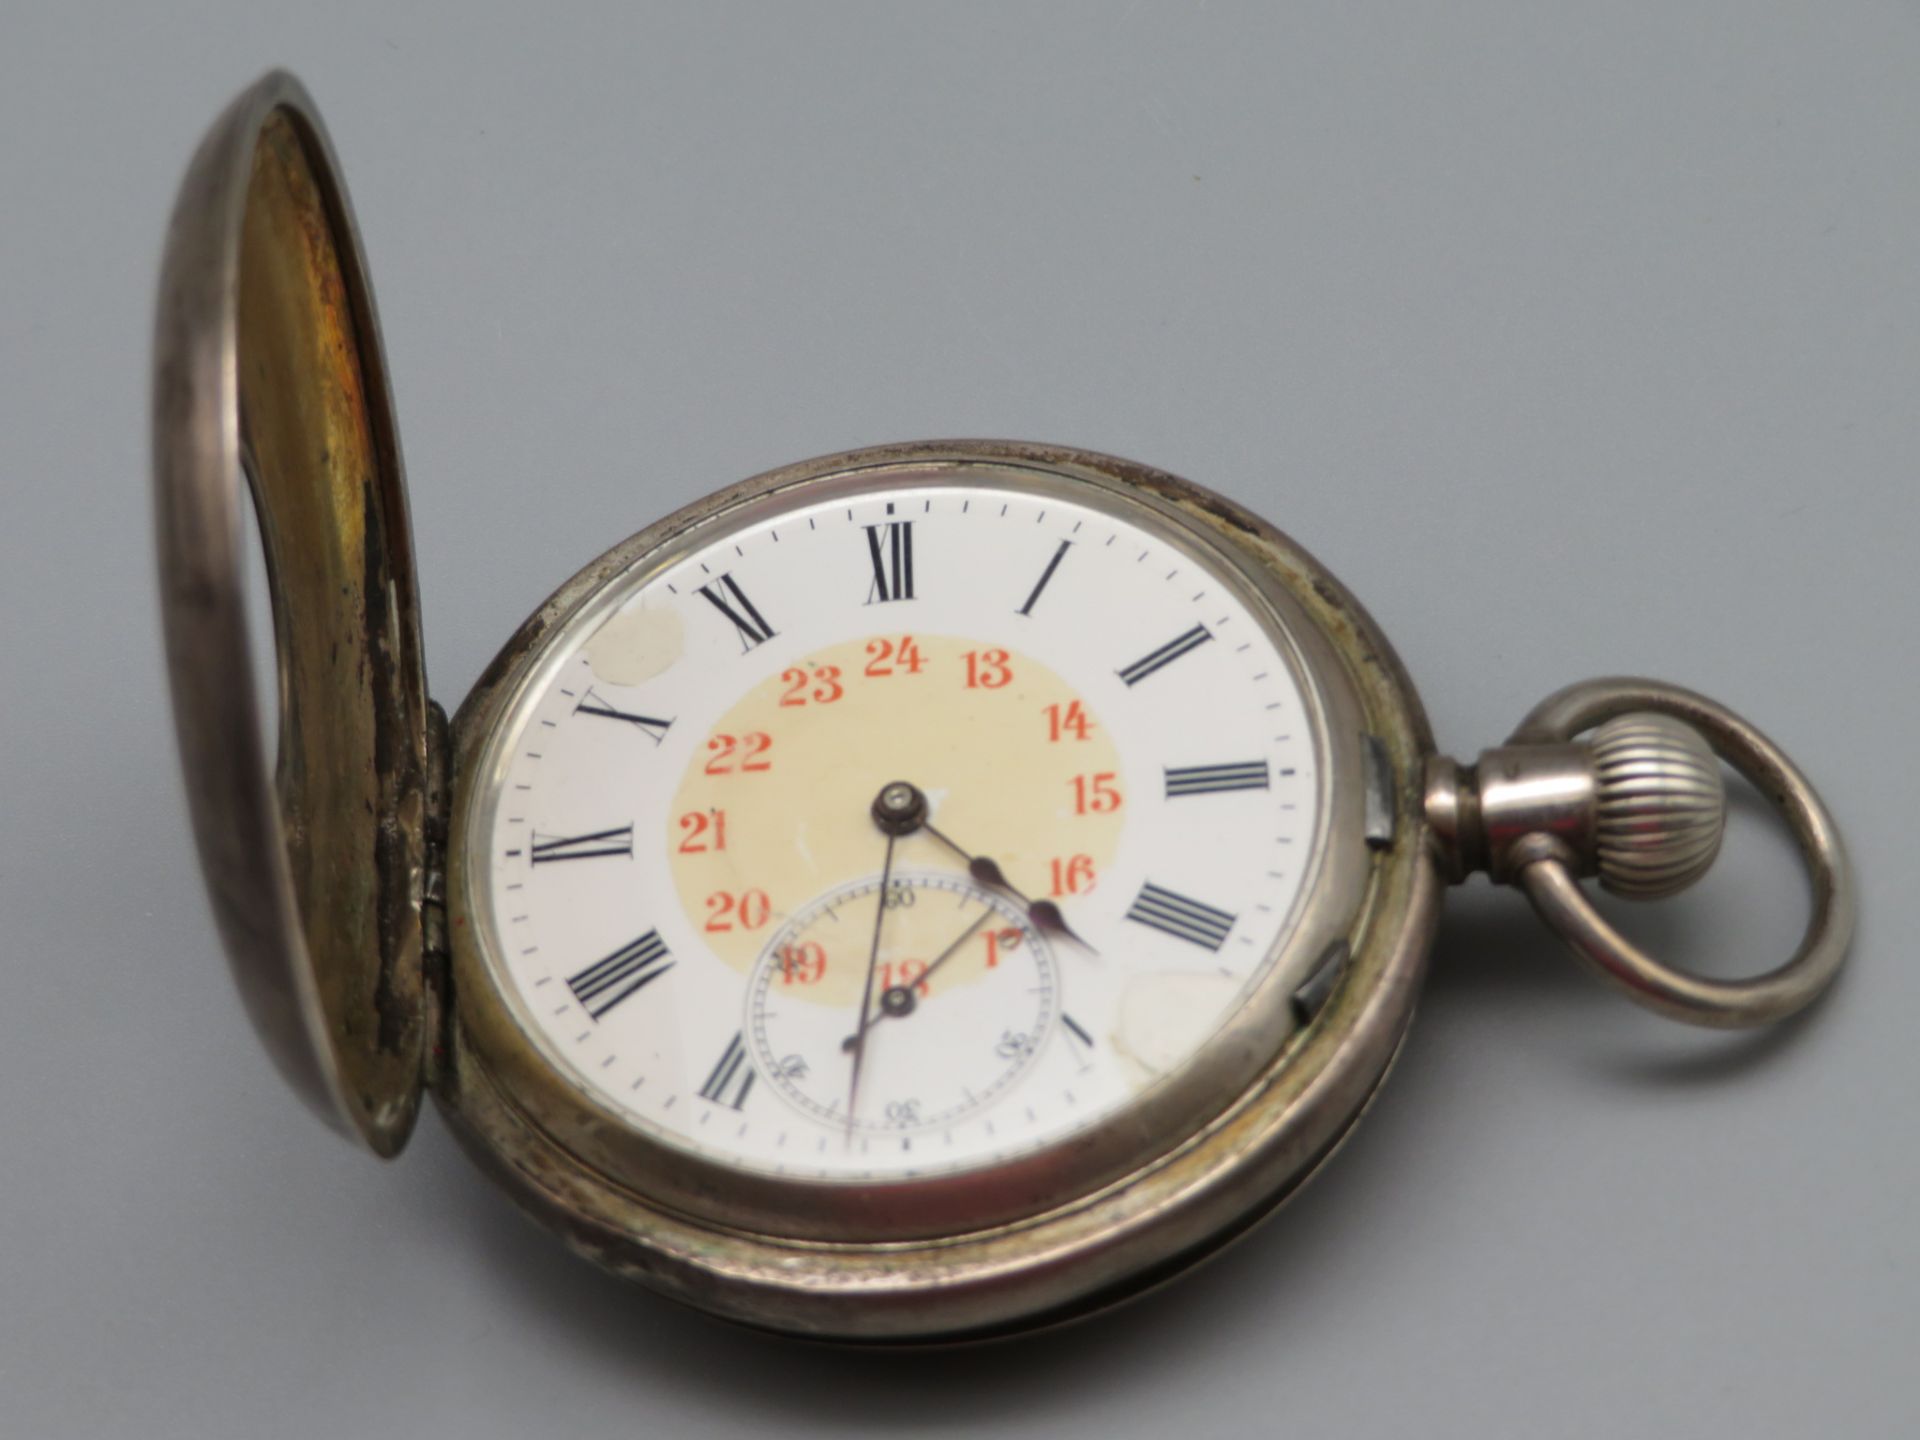 Seltene Taschenuhr aus Adelsbesitz, Ernst Kutterer, Übergehäuse und Uhrengehäuse Silber 800/000, de - Image 3 of 4